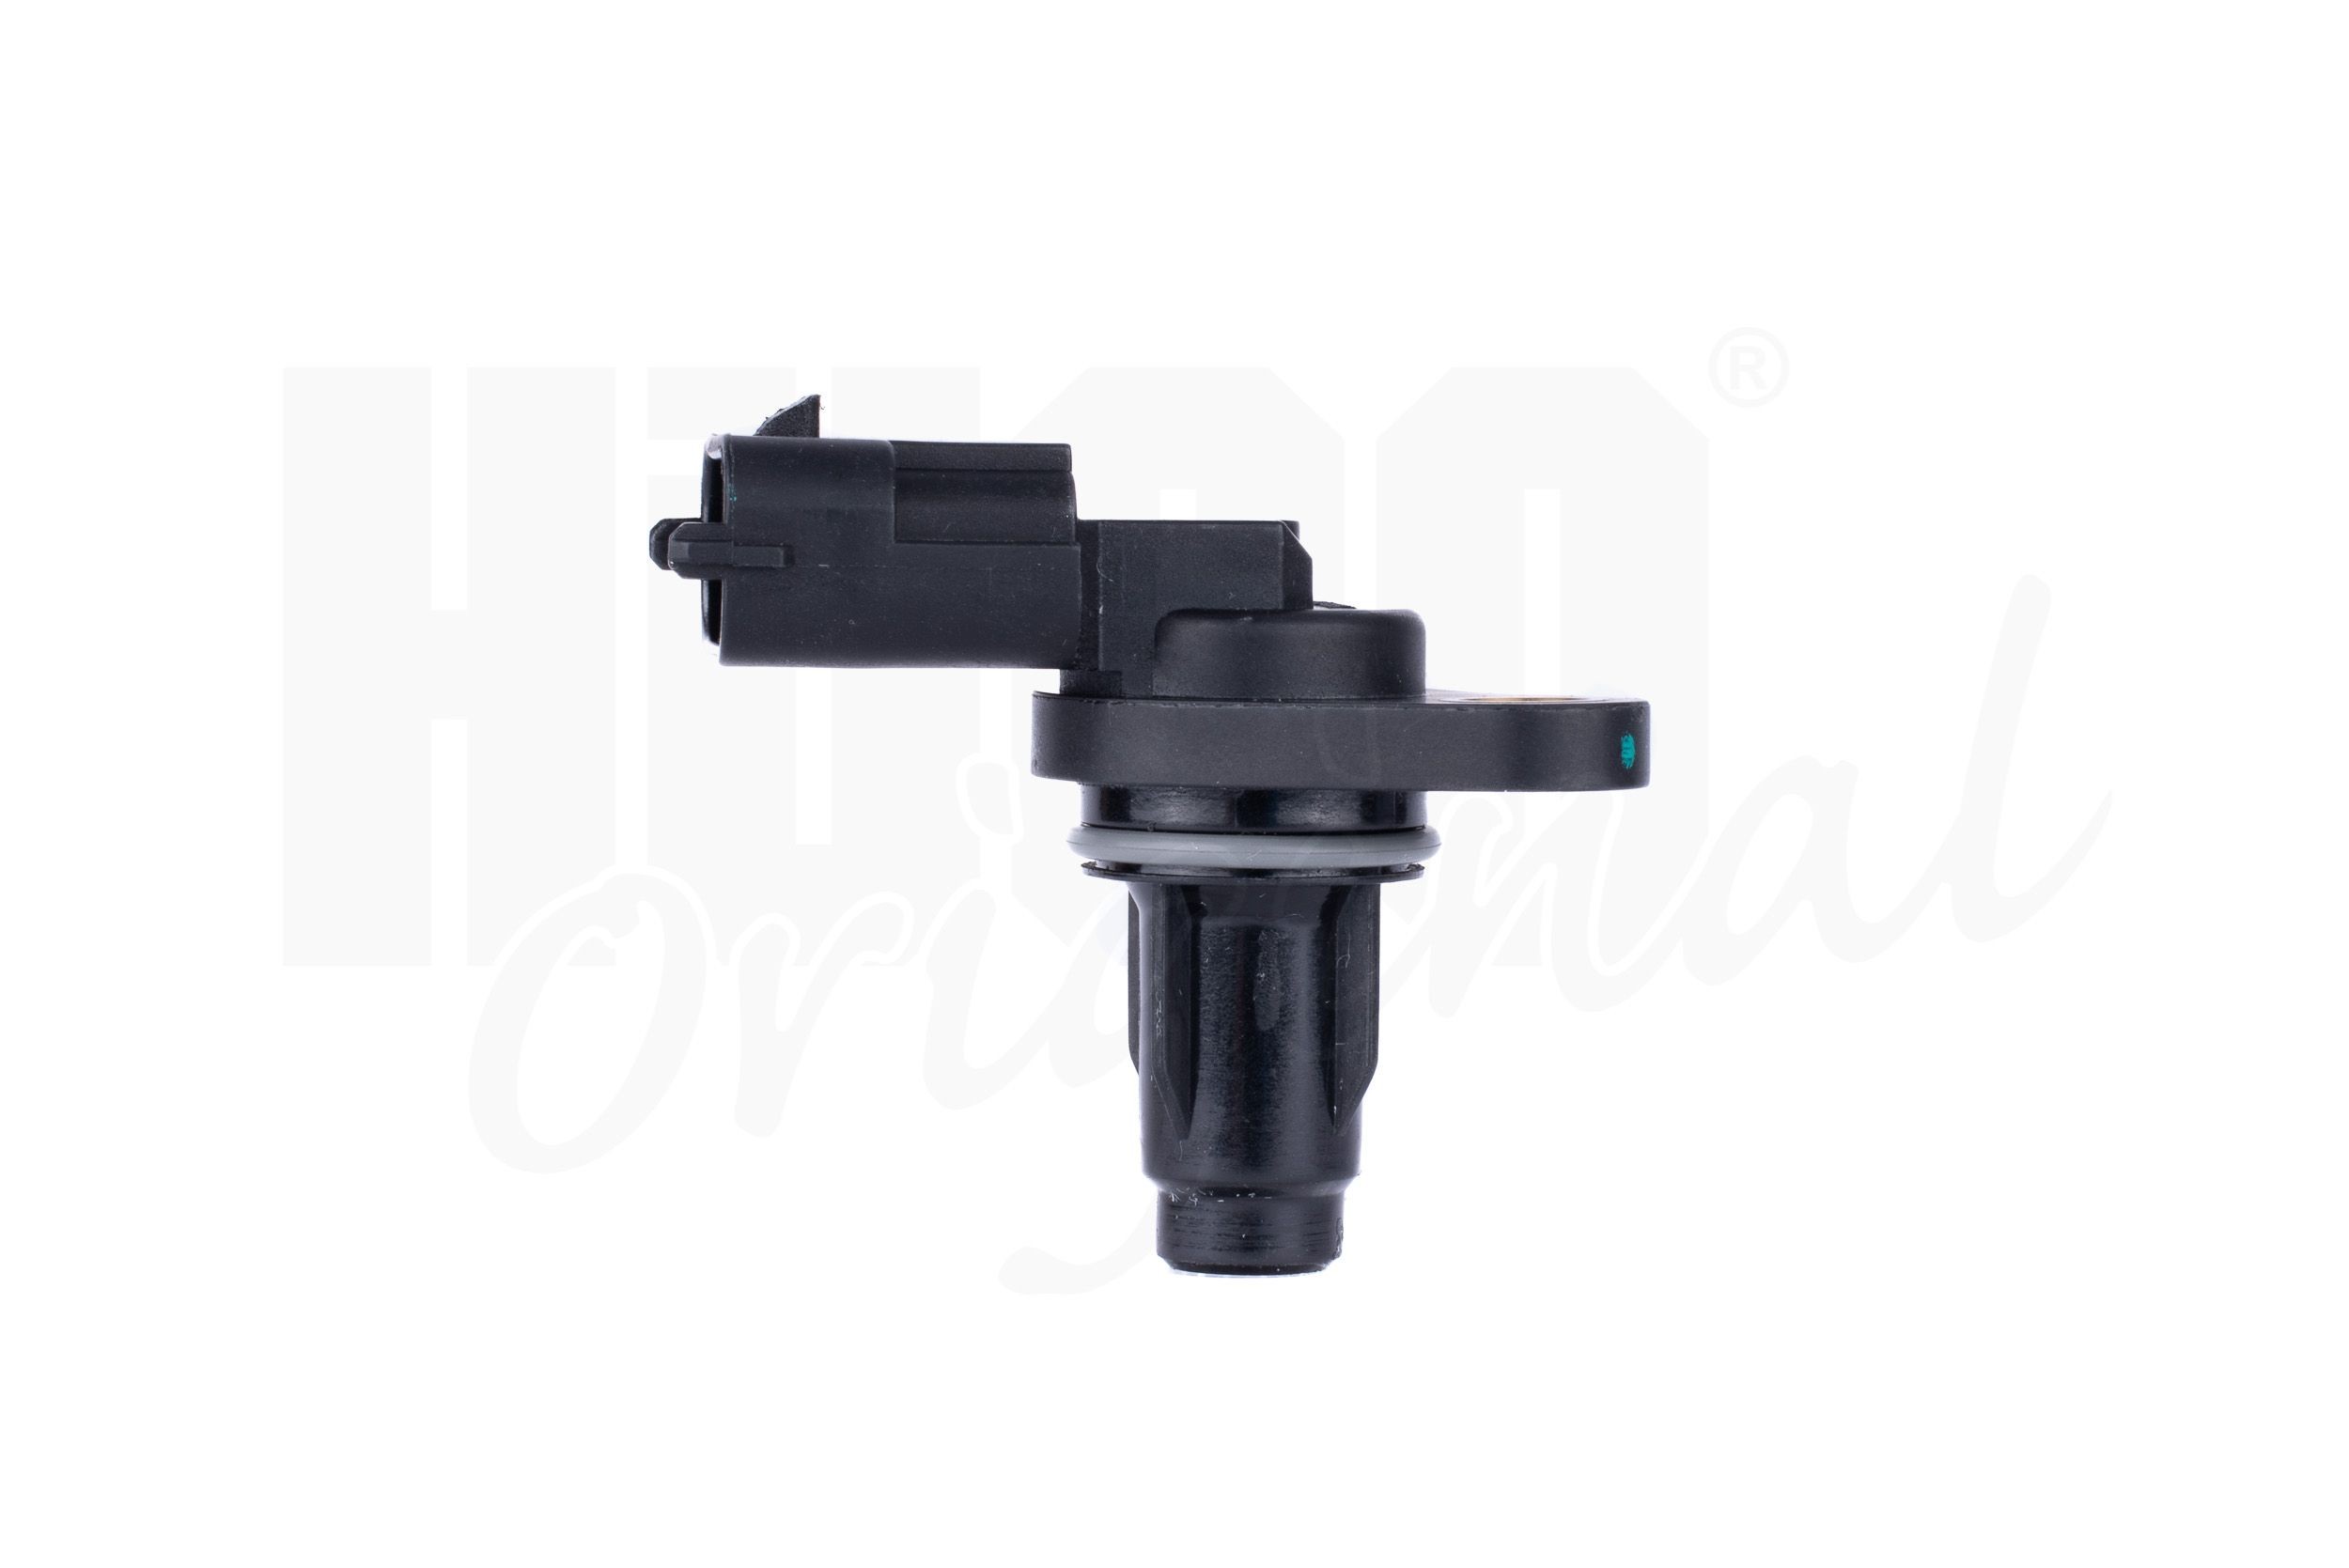 131869 Cam position sensor Hueco HITACHI 131869 review and test